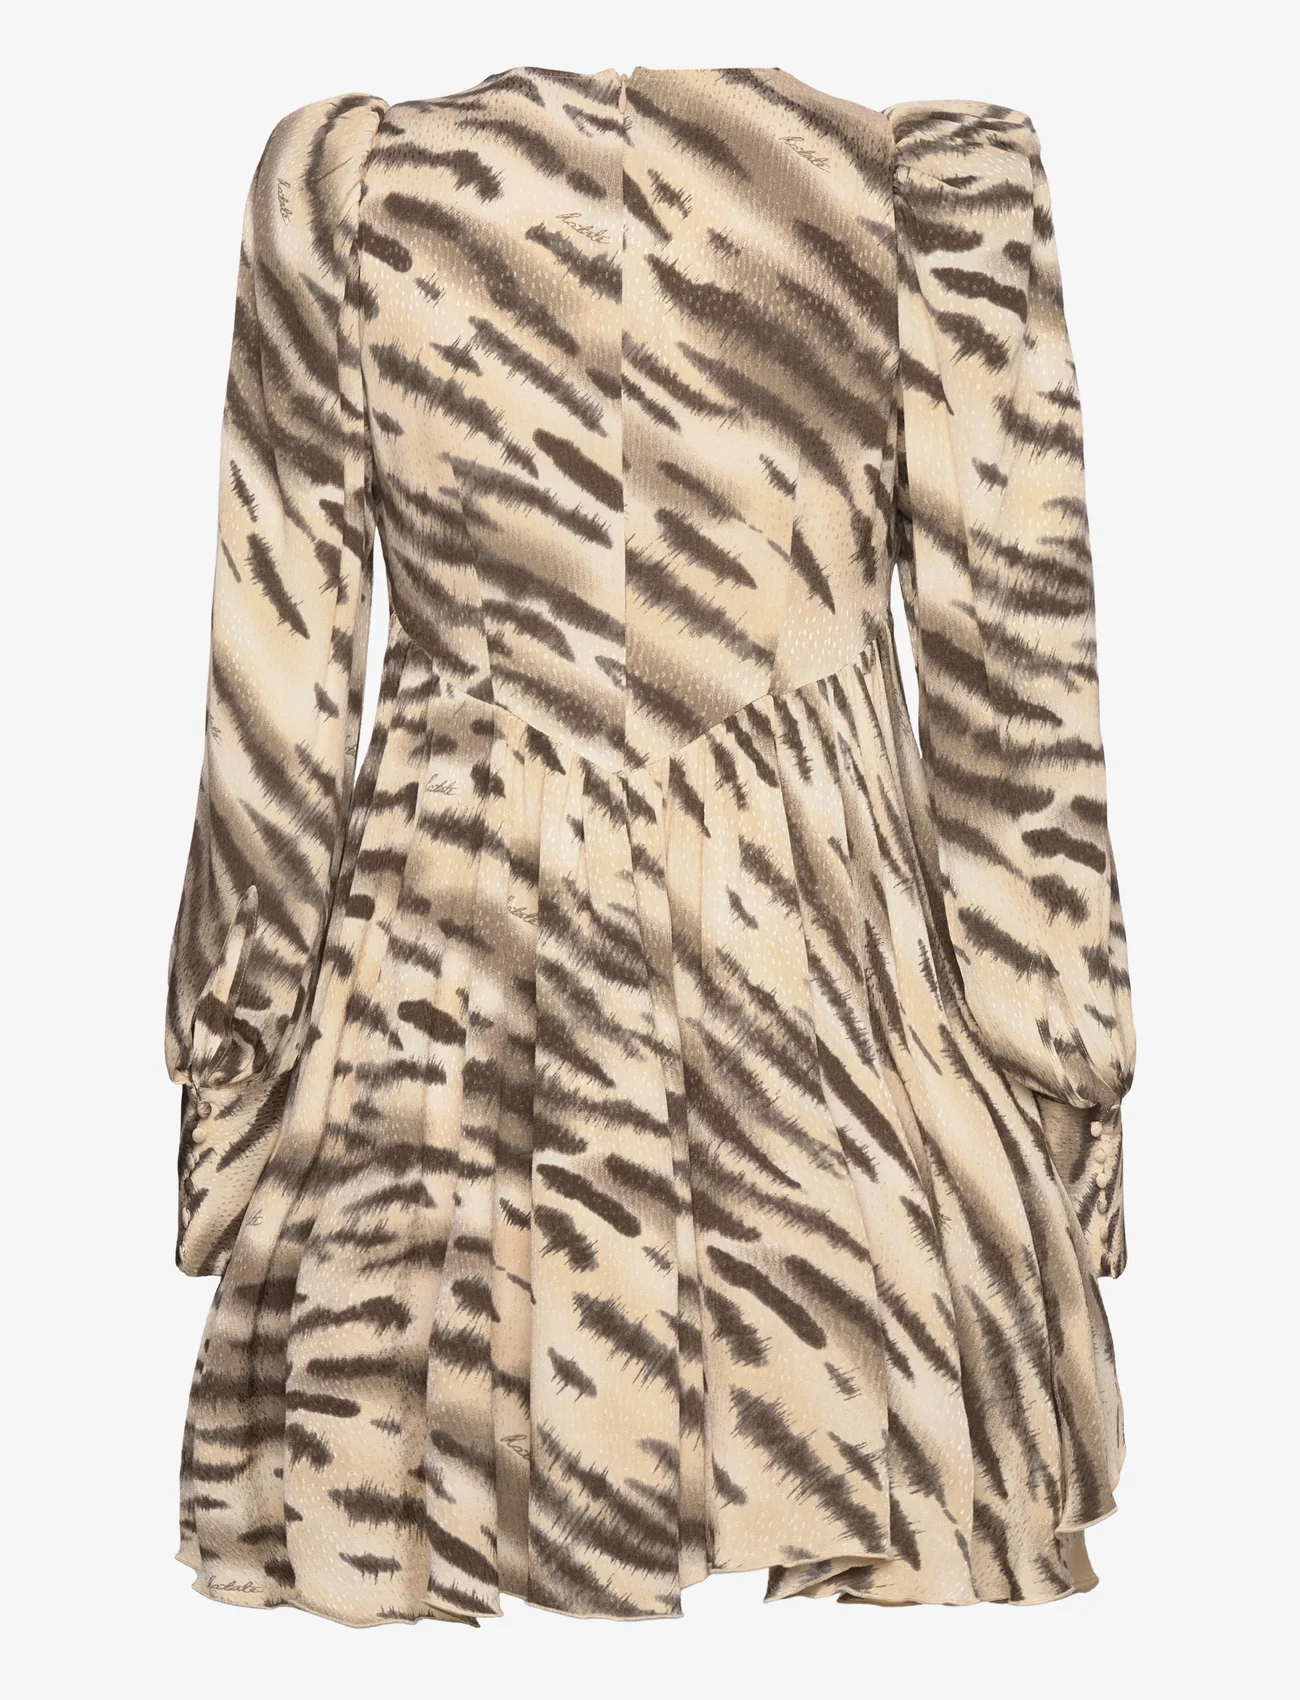 ROTATE Birger Christensen - Light Jacquard Mini Dress - odzież imprezowa w cenach outletowych - putty beige comb. - 1